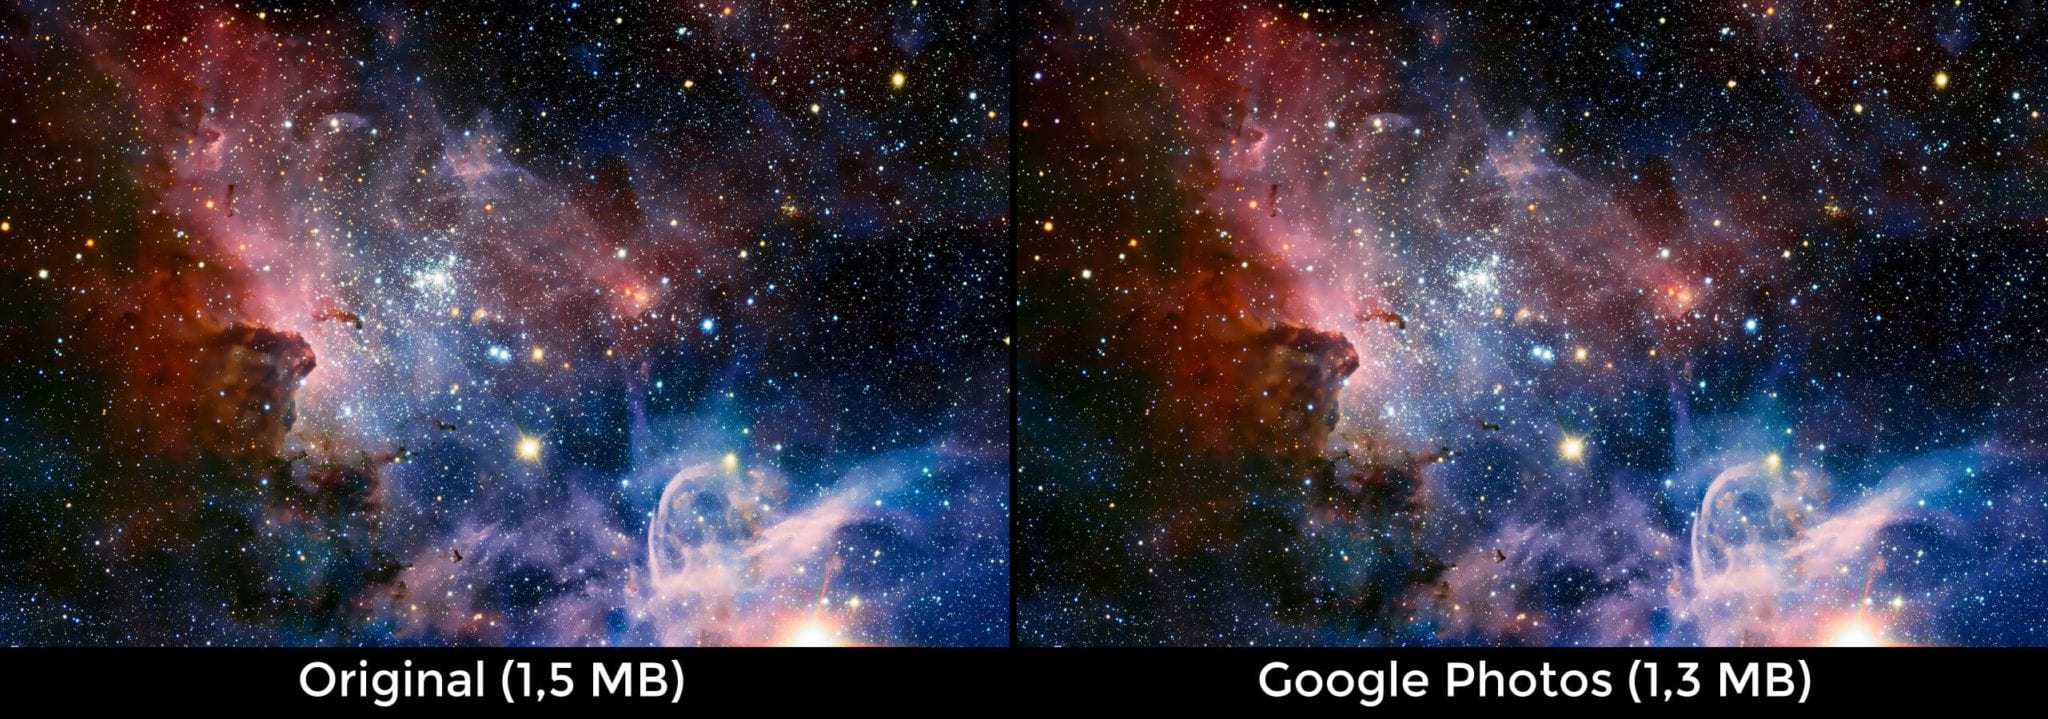 Perbandingan Kualitas Gambar Google Photos